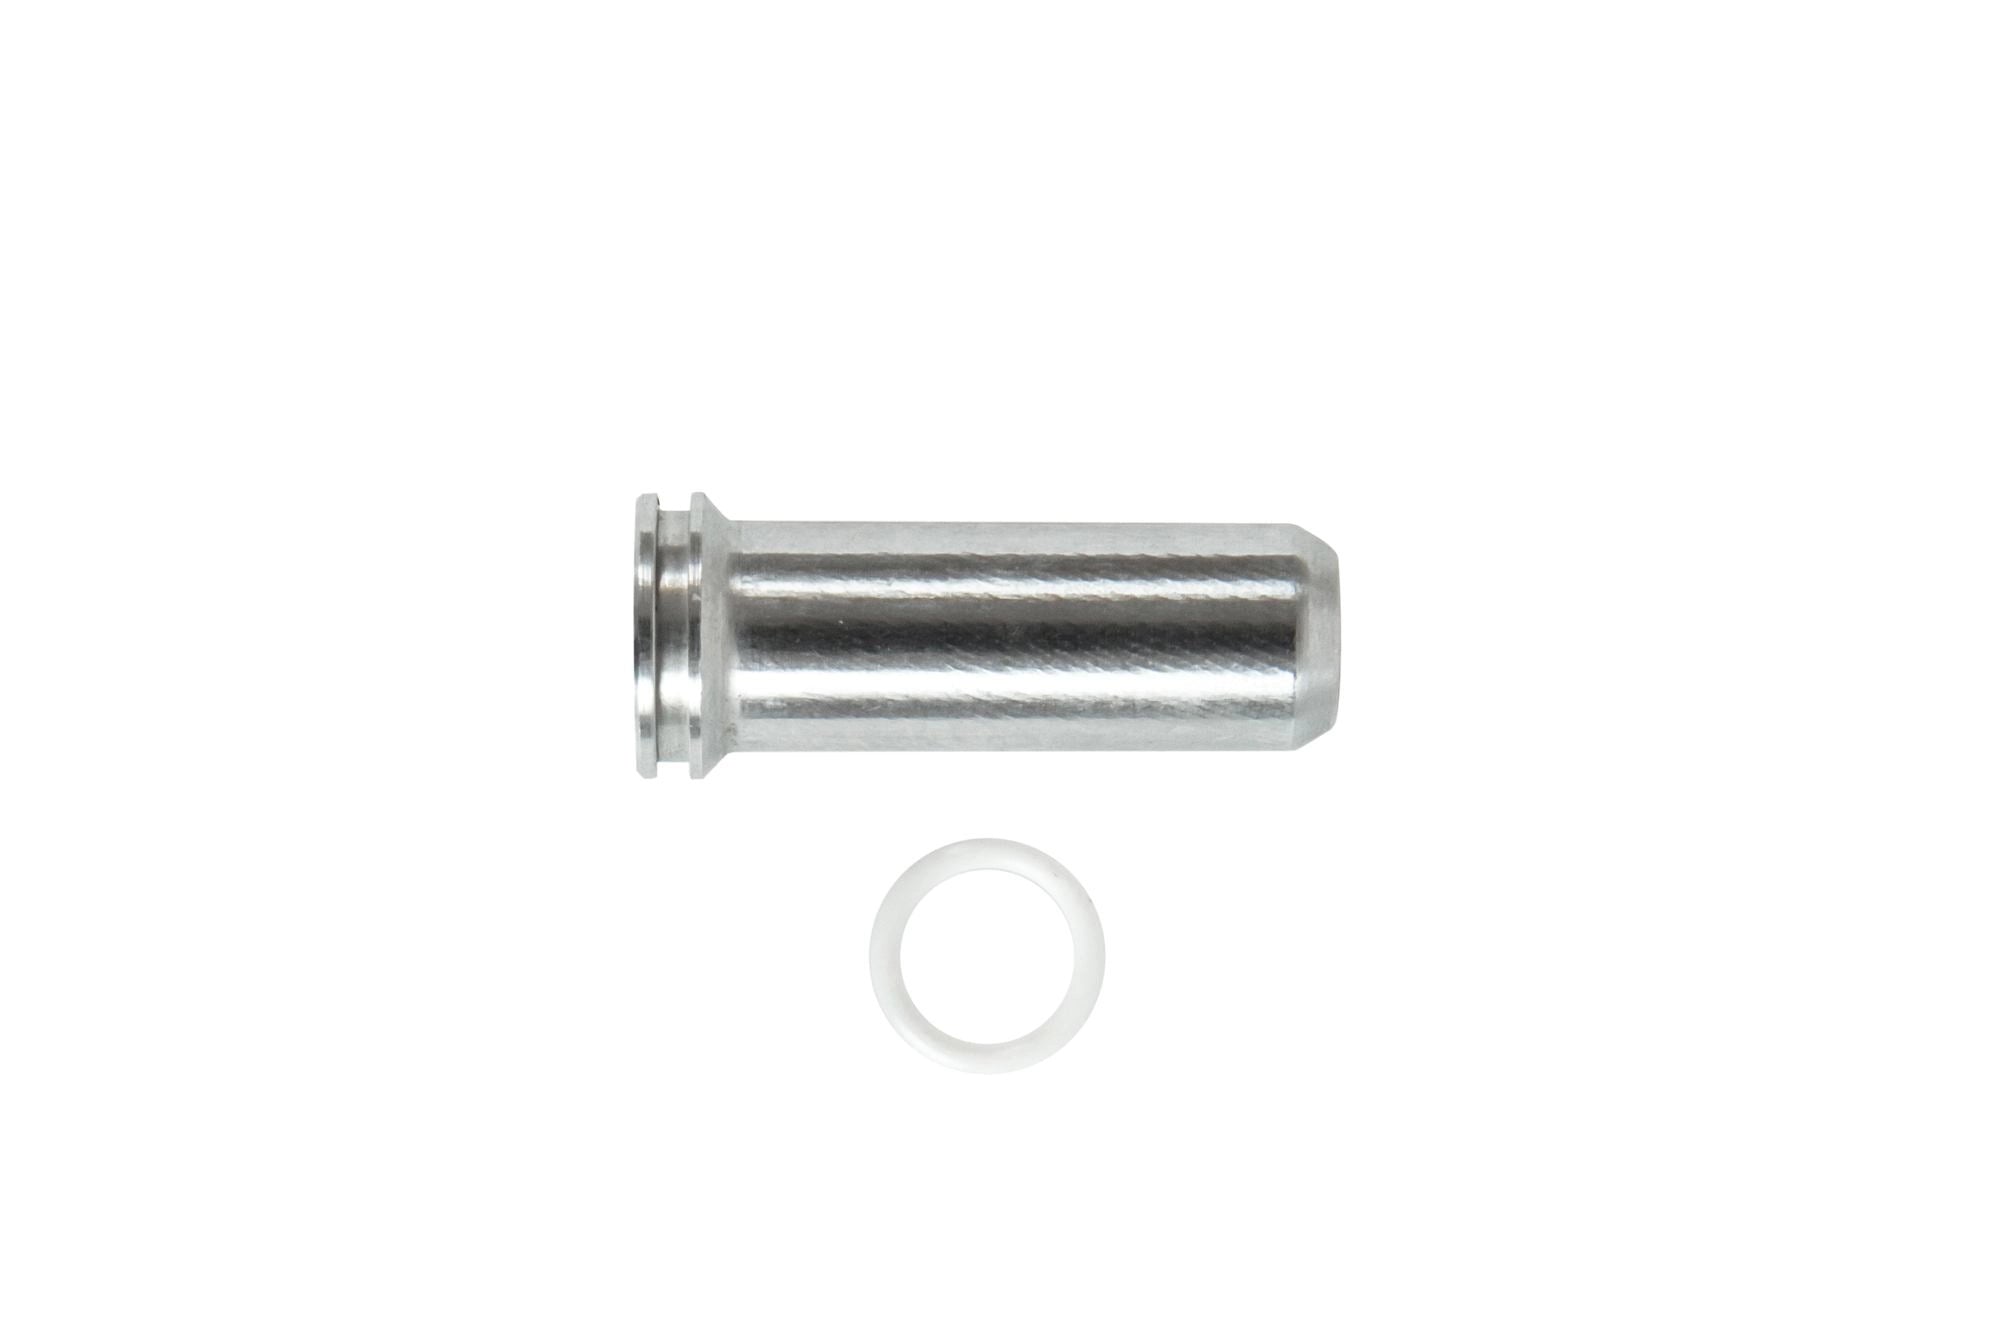 Aluminum CNC Nozzle - 35.3 mm